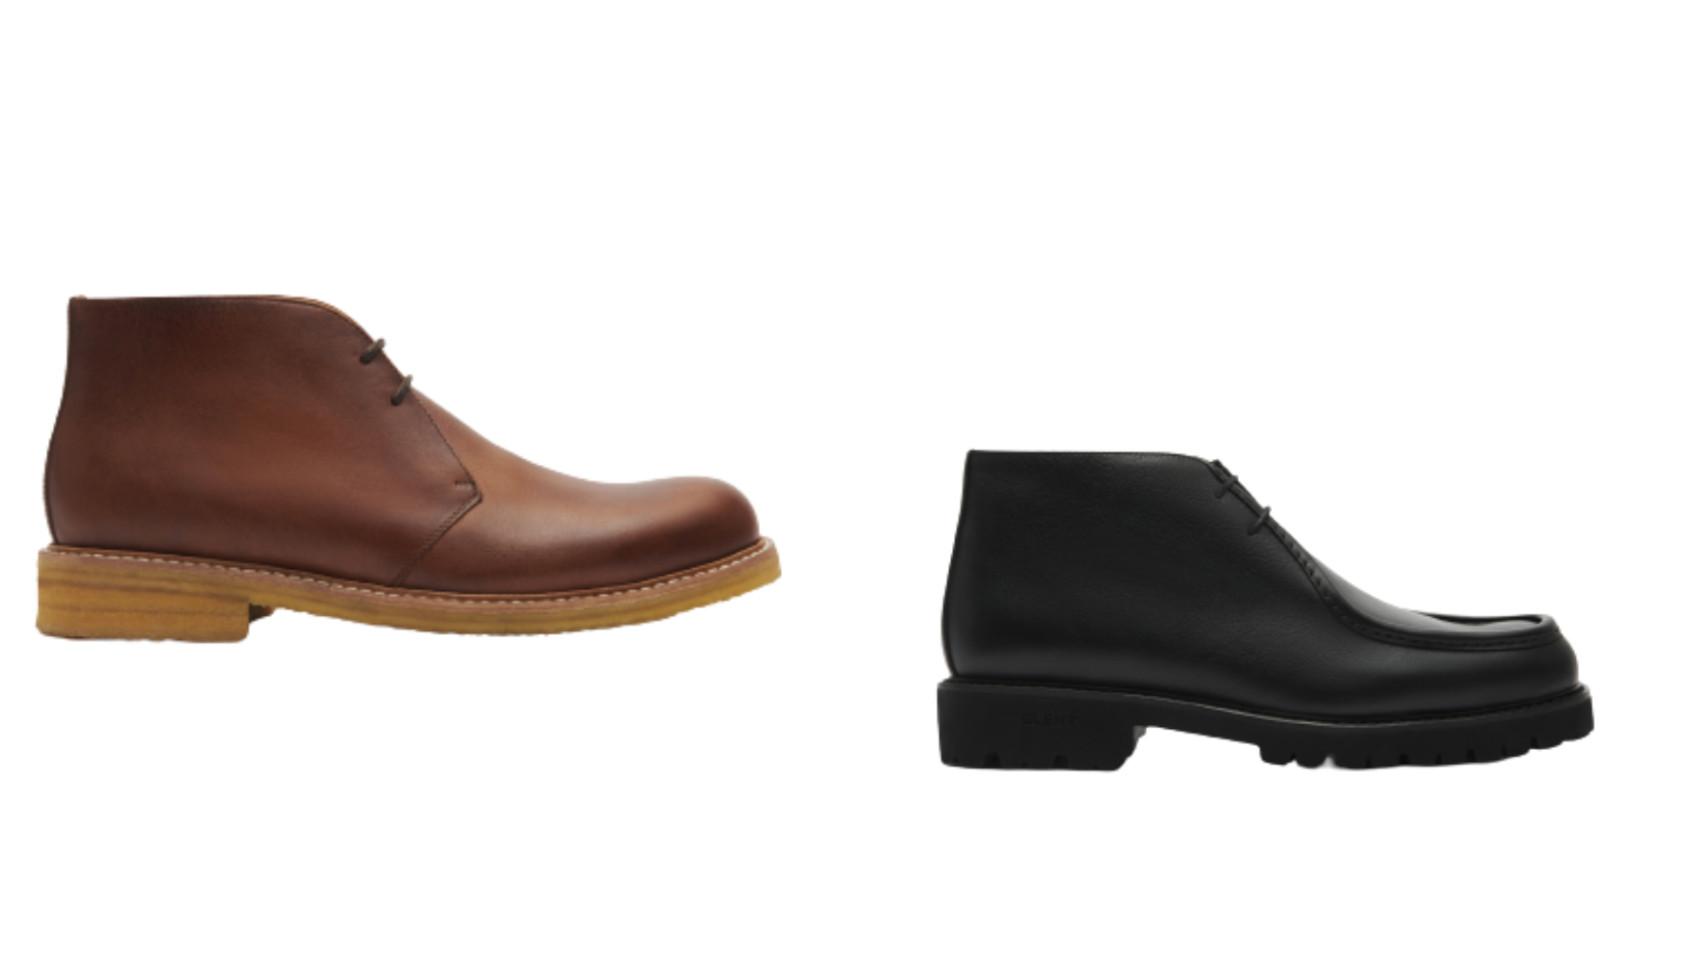 Dos modelos de Glent. La bota marrón cuesta 259 euros, y la de piel negra, 269 euros.